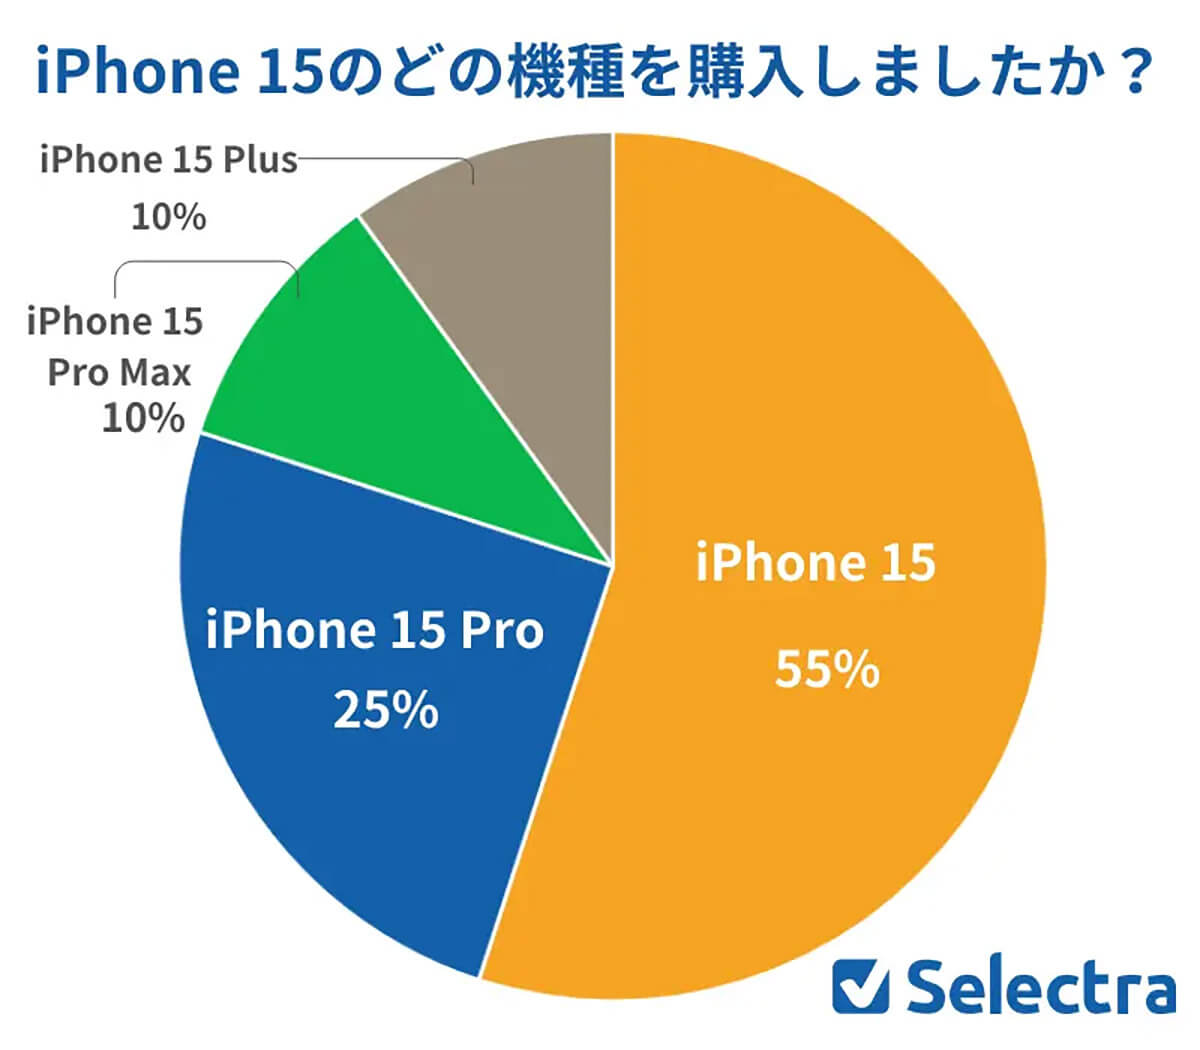 iPhone 15のどの機種を購入しましたか？